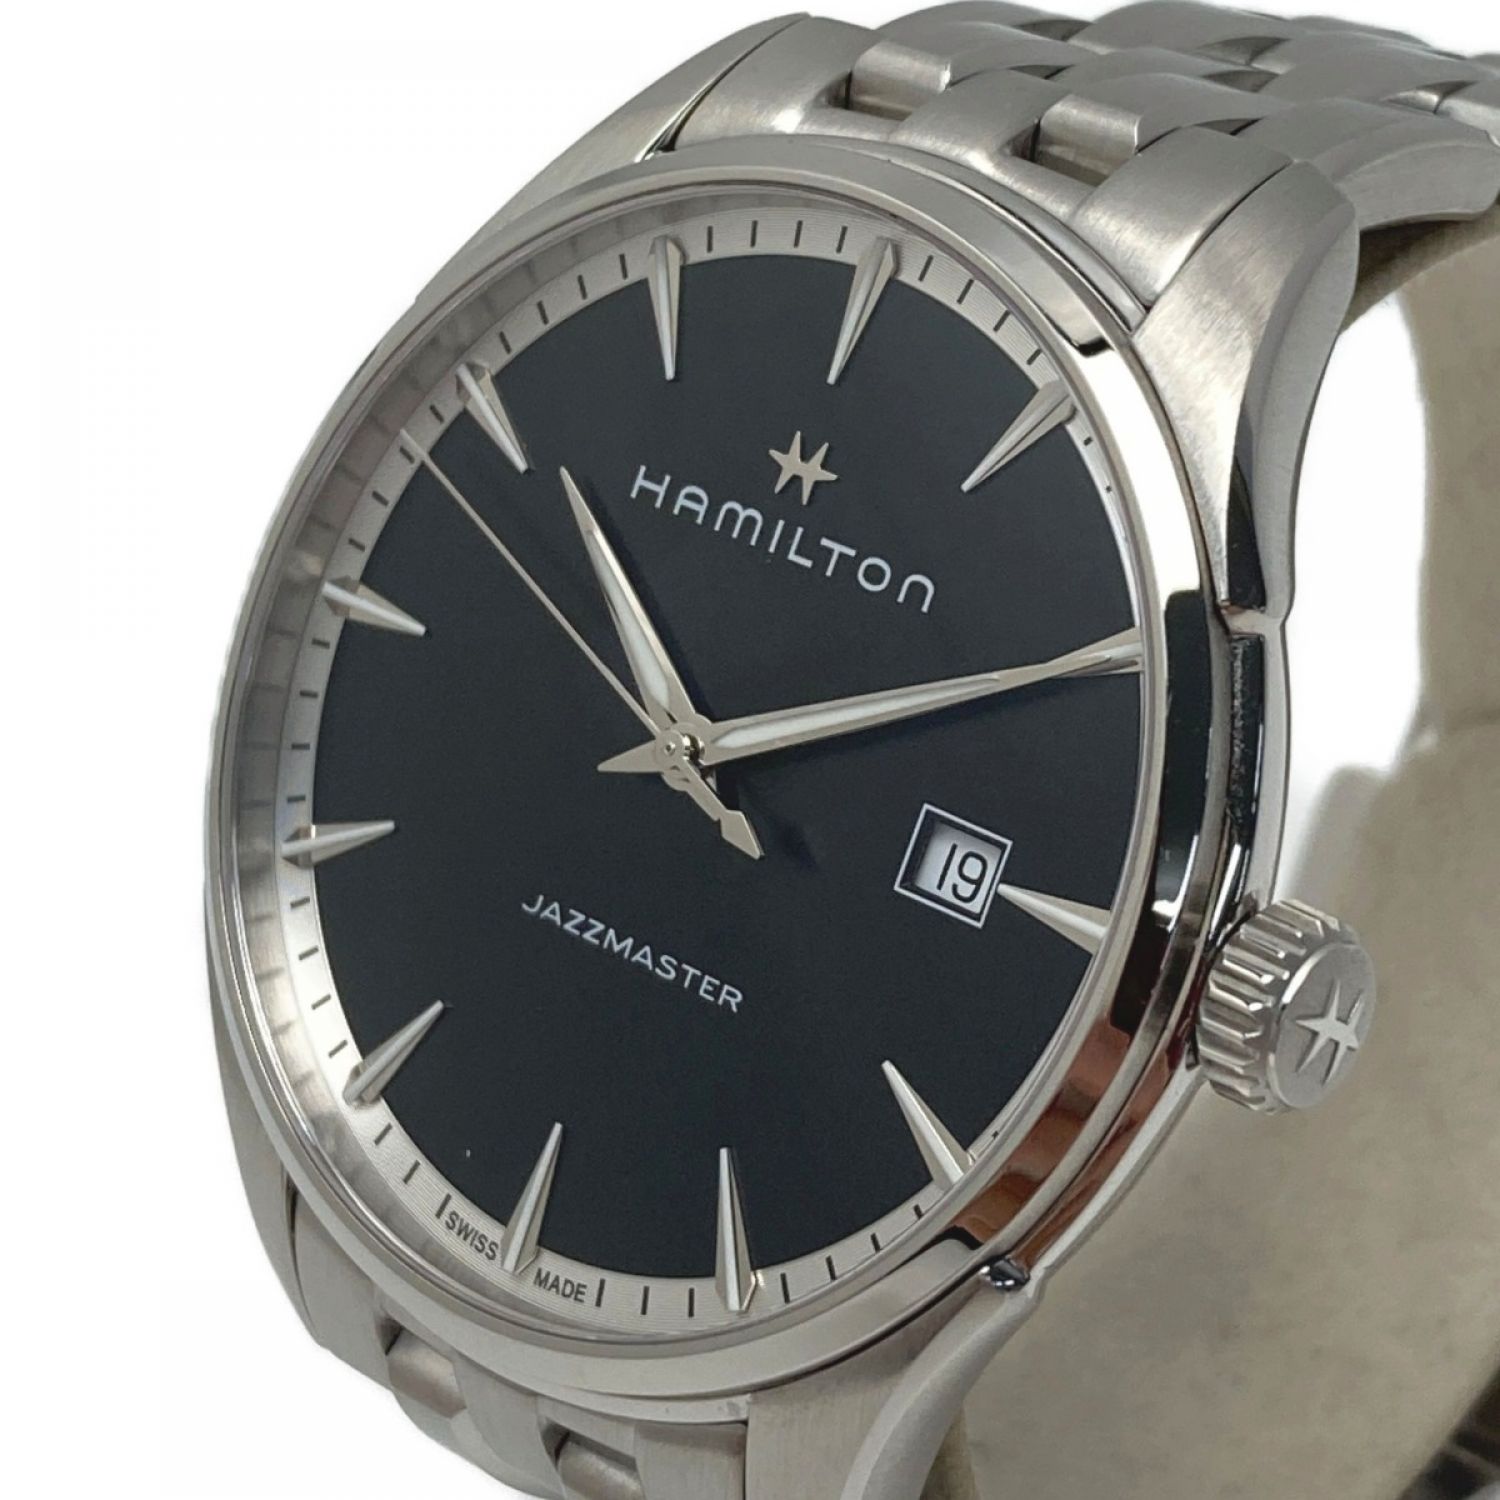 HAMILTON ハミルトン JAZZMASTER GENT QUARTZ ジャズマスター レザーベルト クォーツアナログウォッチ 腕時計 ブラック/ブラウン H324510